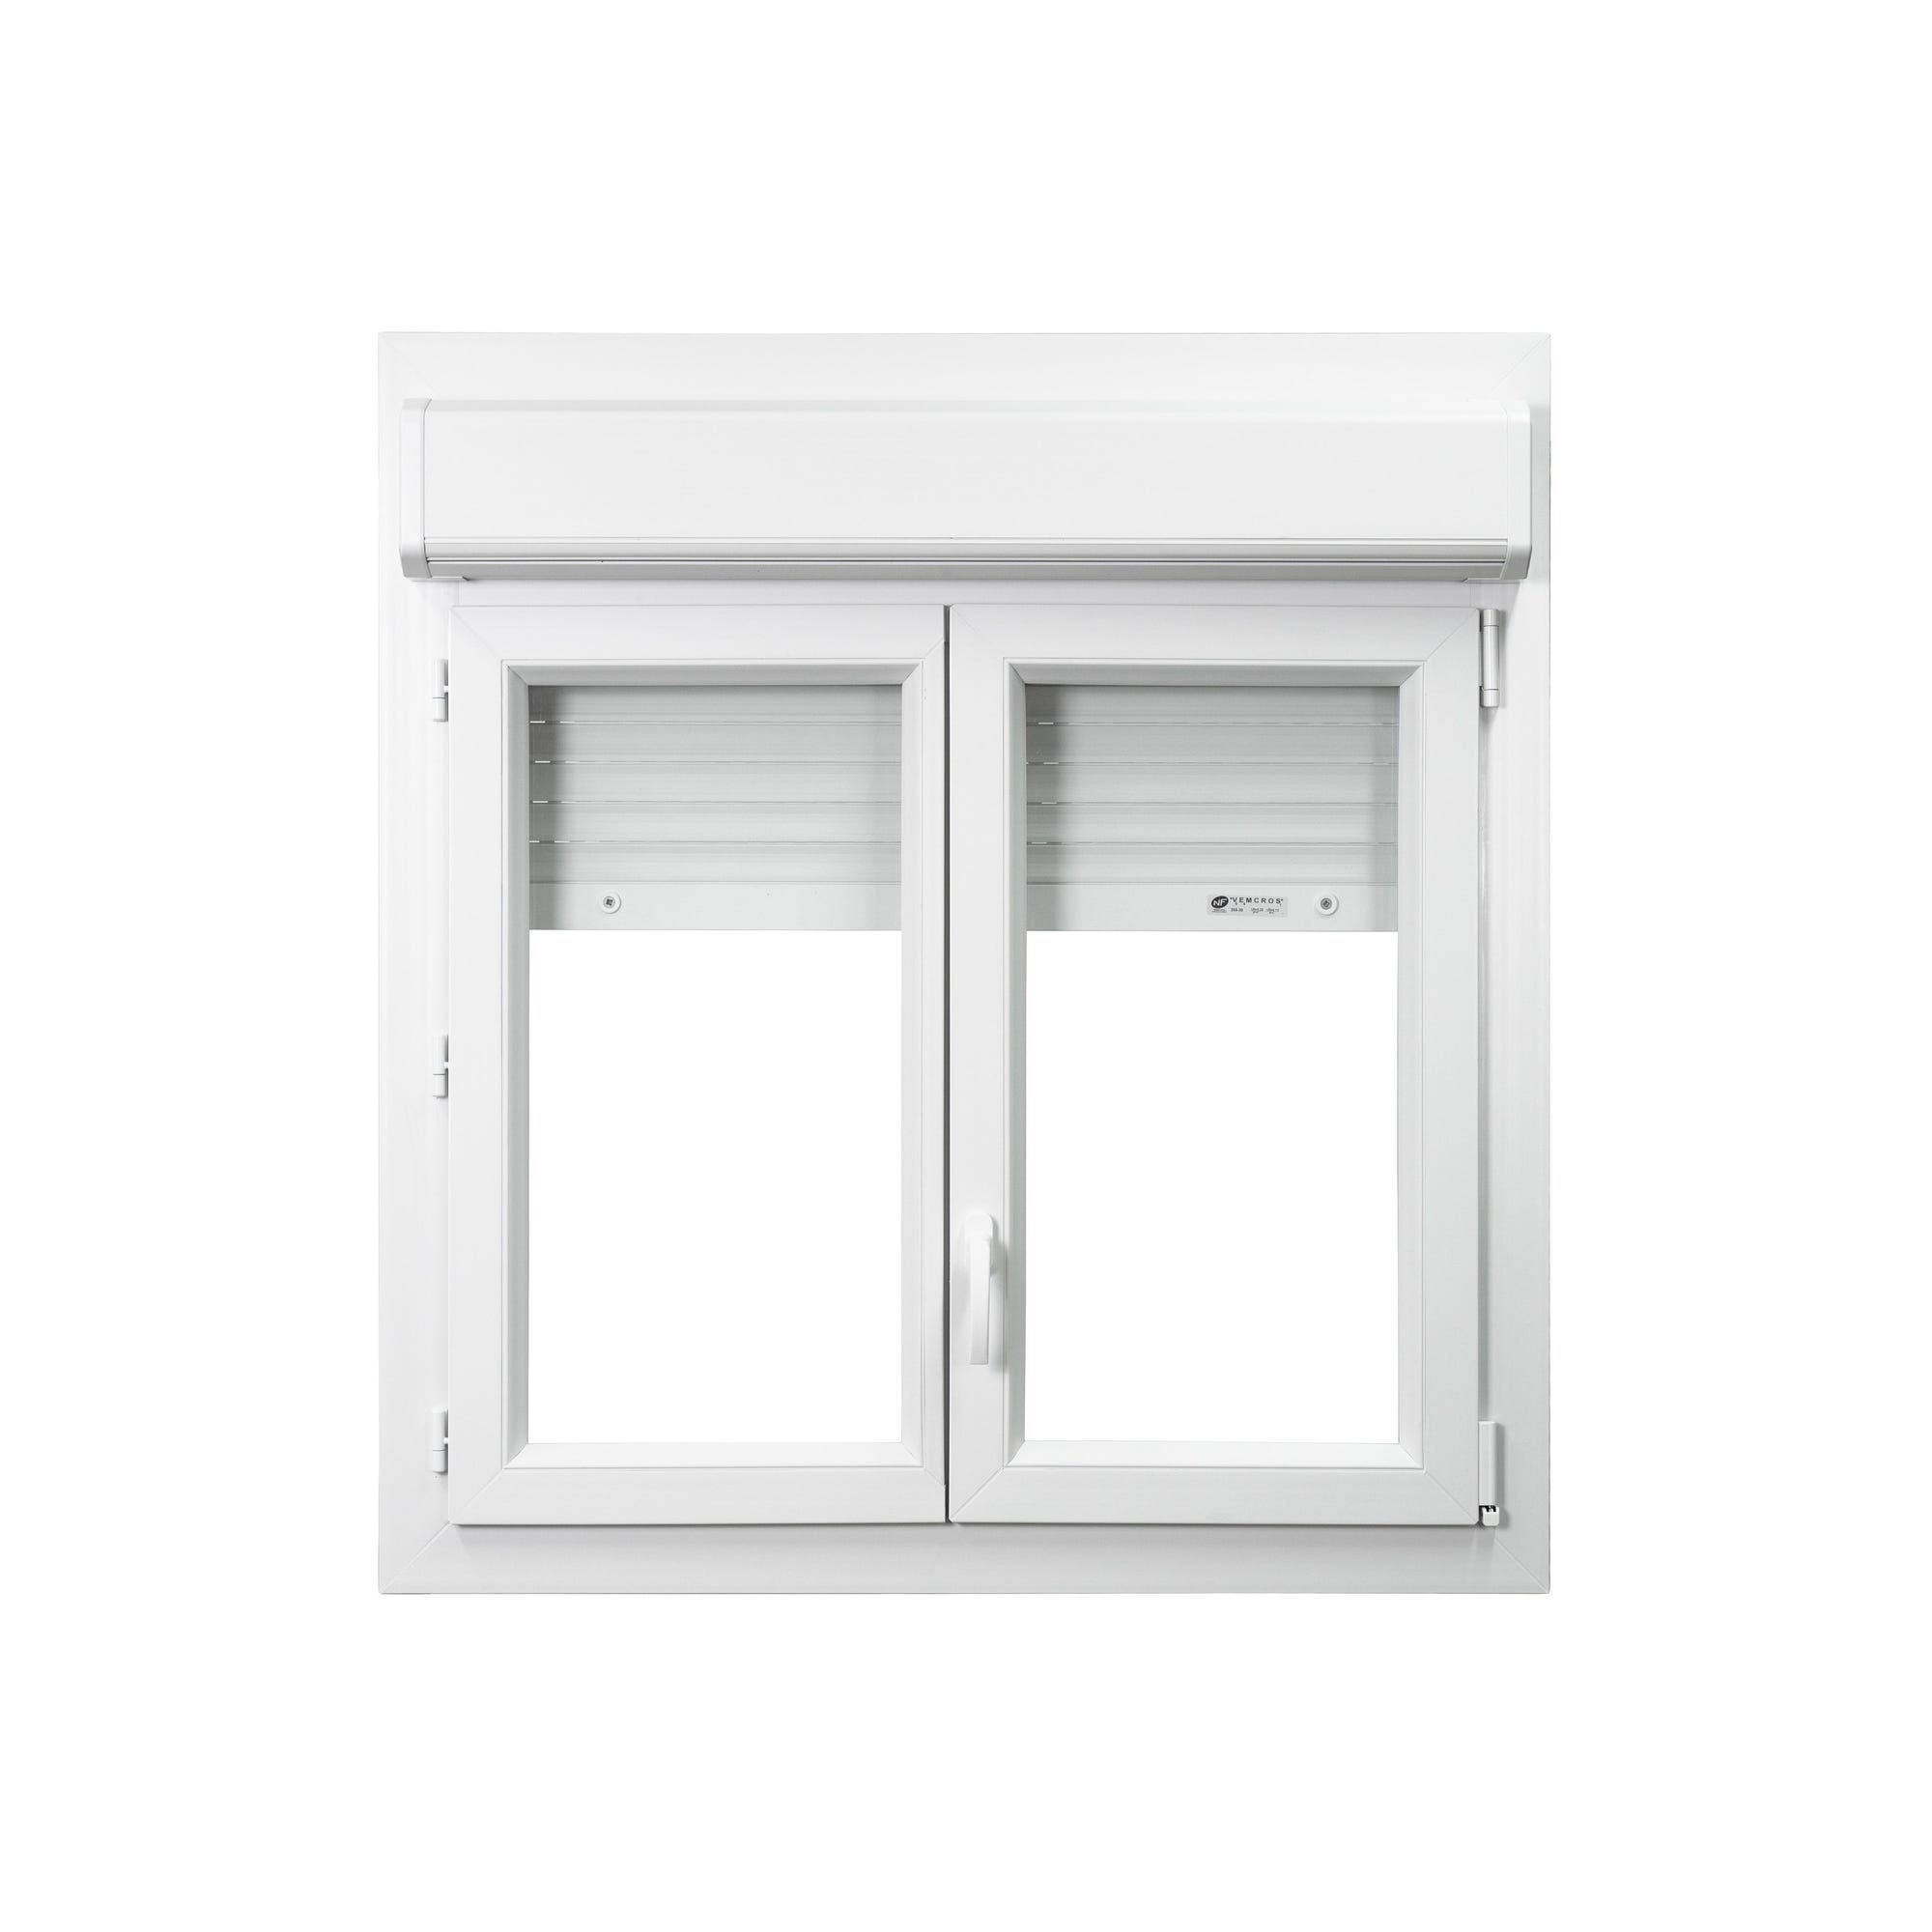 Fenêtre PVC avec volet roulant intégré monobloc Ob 2 vantaux H.135 x L.140 cm - GROSFILLEX 0